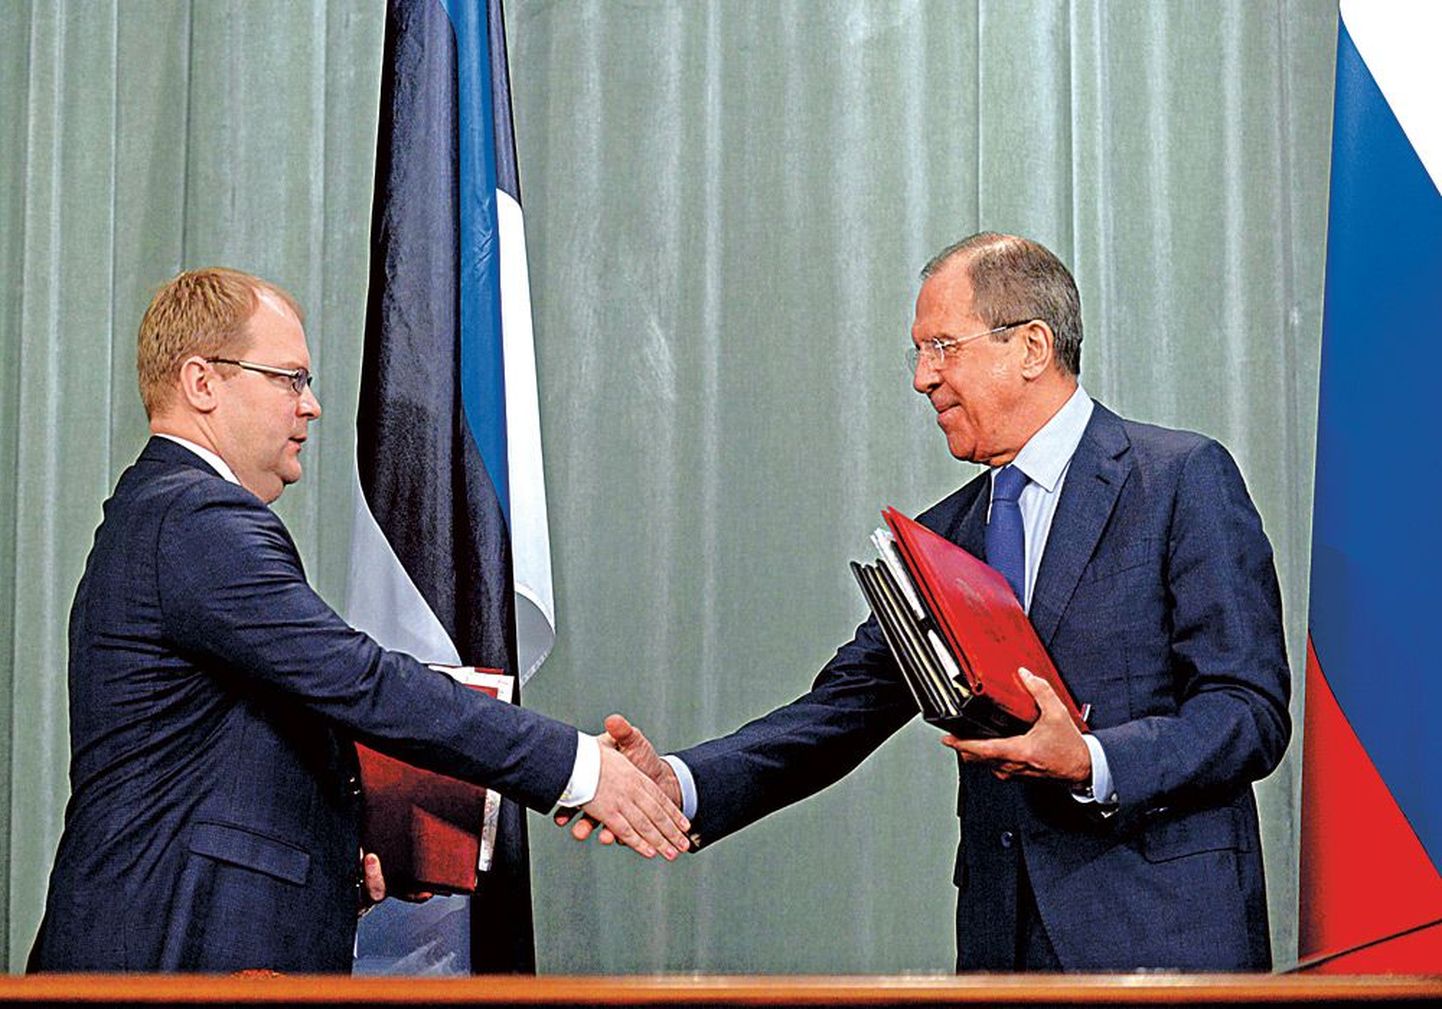 Министр иностранных дел Урмас Паэт (слева) пригласил российского коллегу Сергея Лаврова посетить с визитом Эстонию.